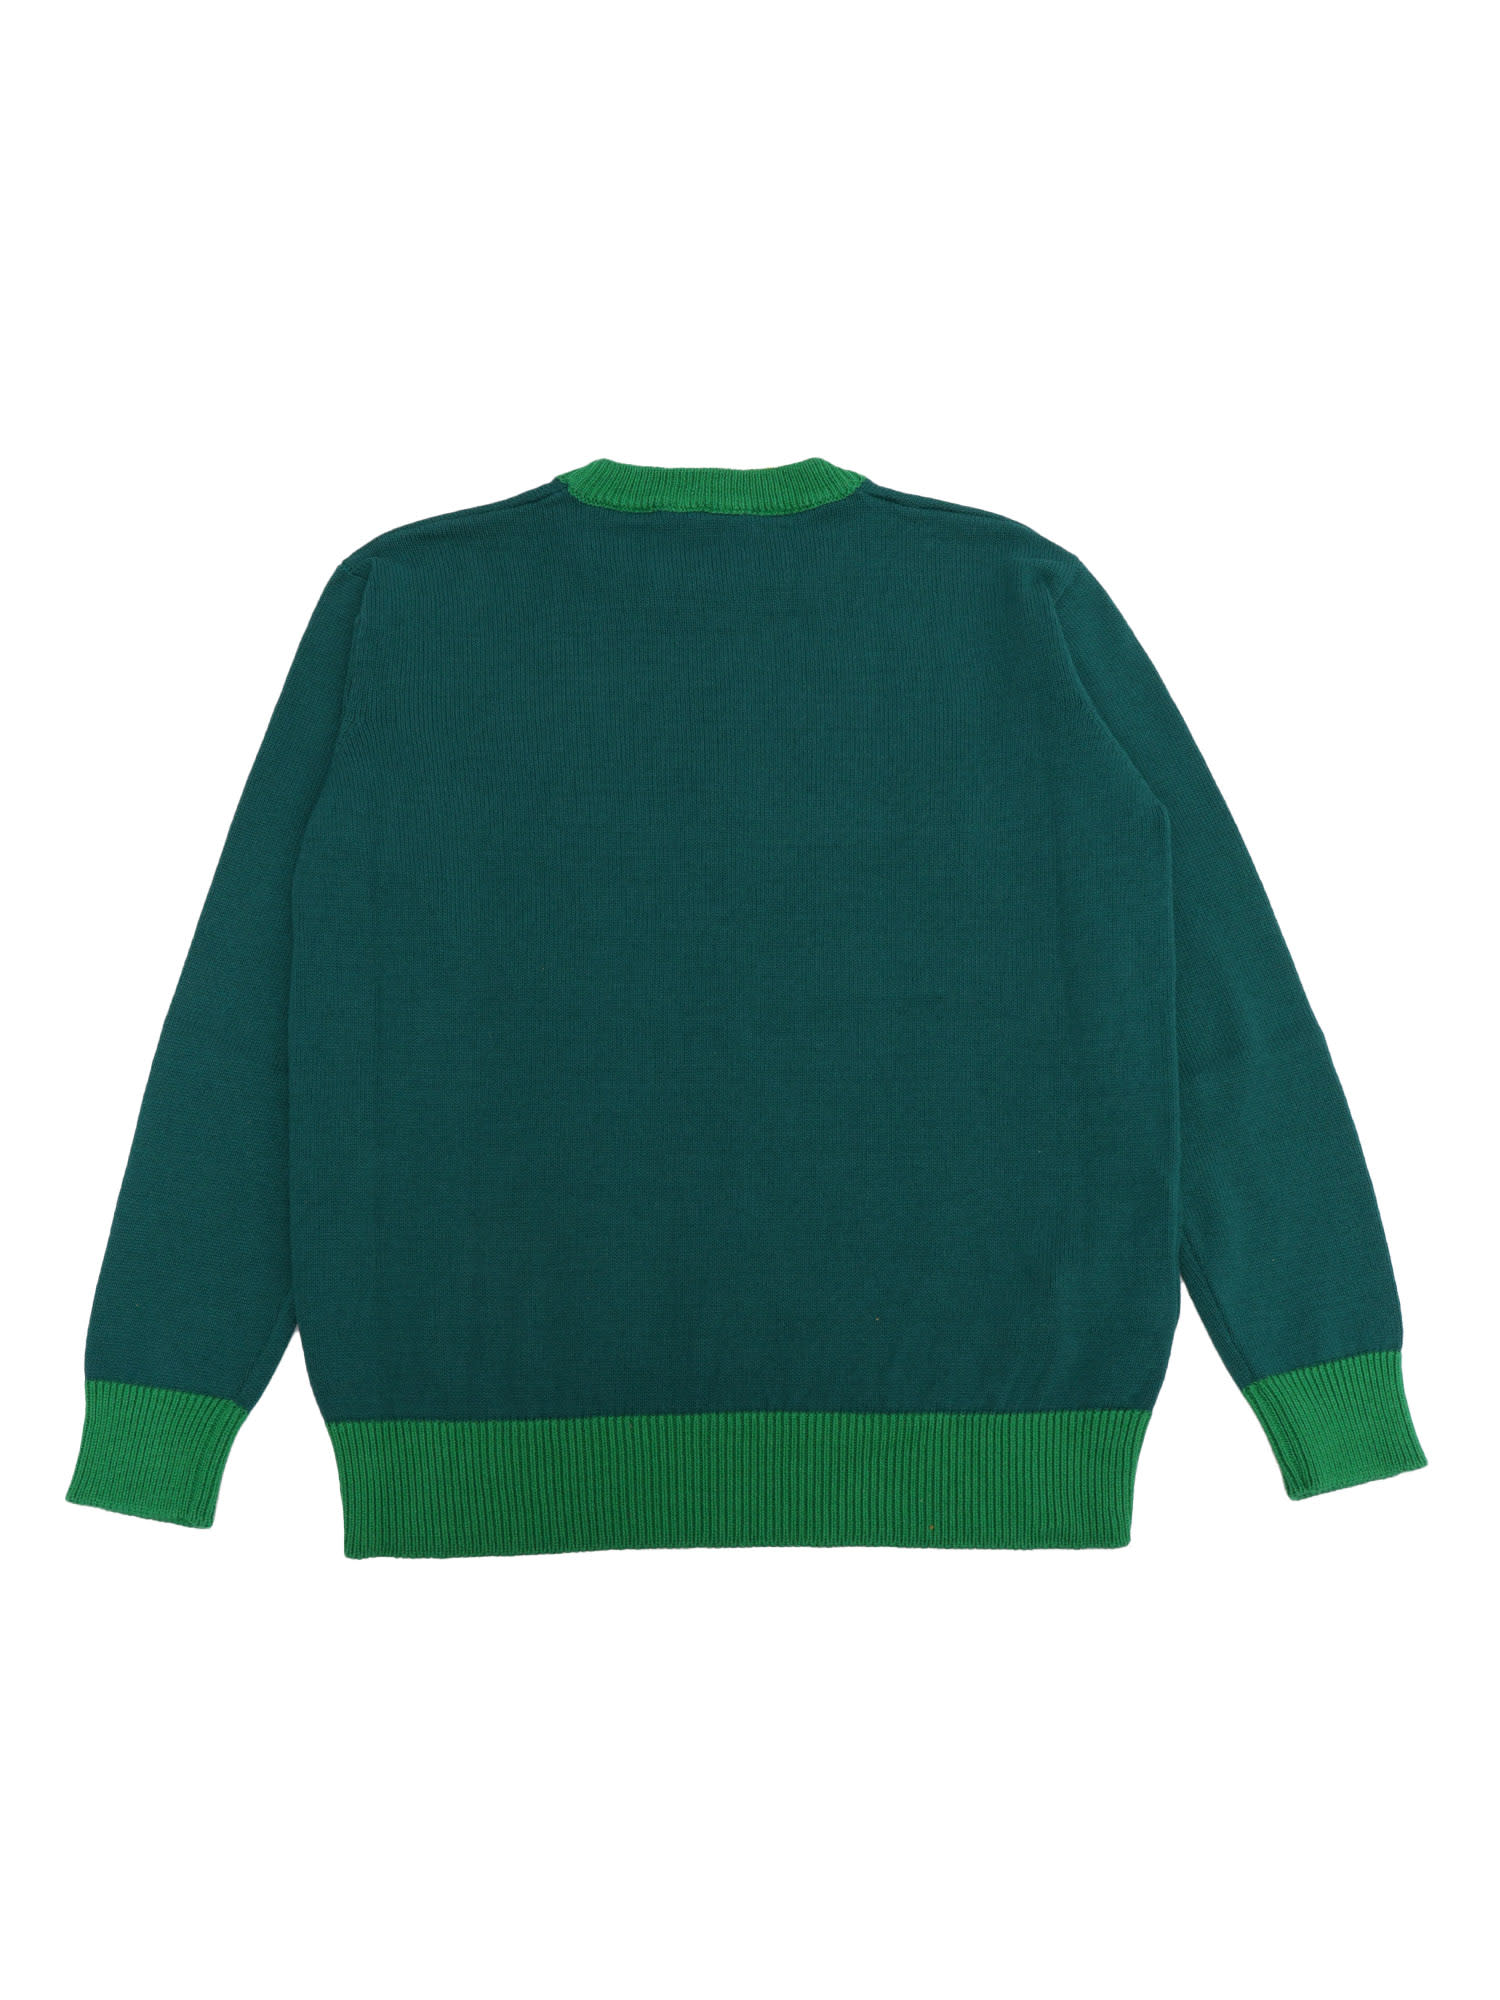 Shop Marni Green Logo Sweater